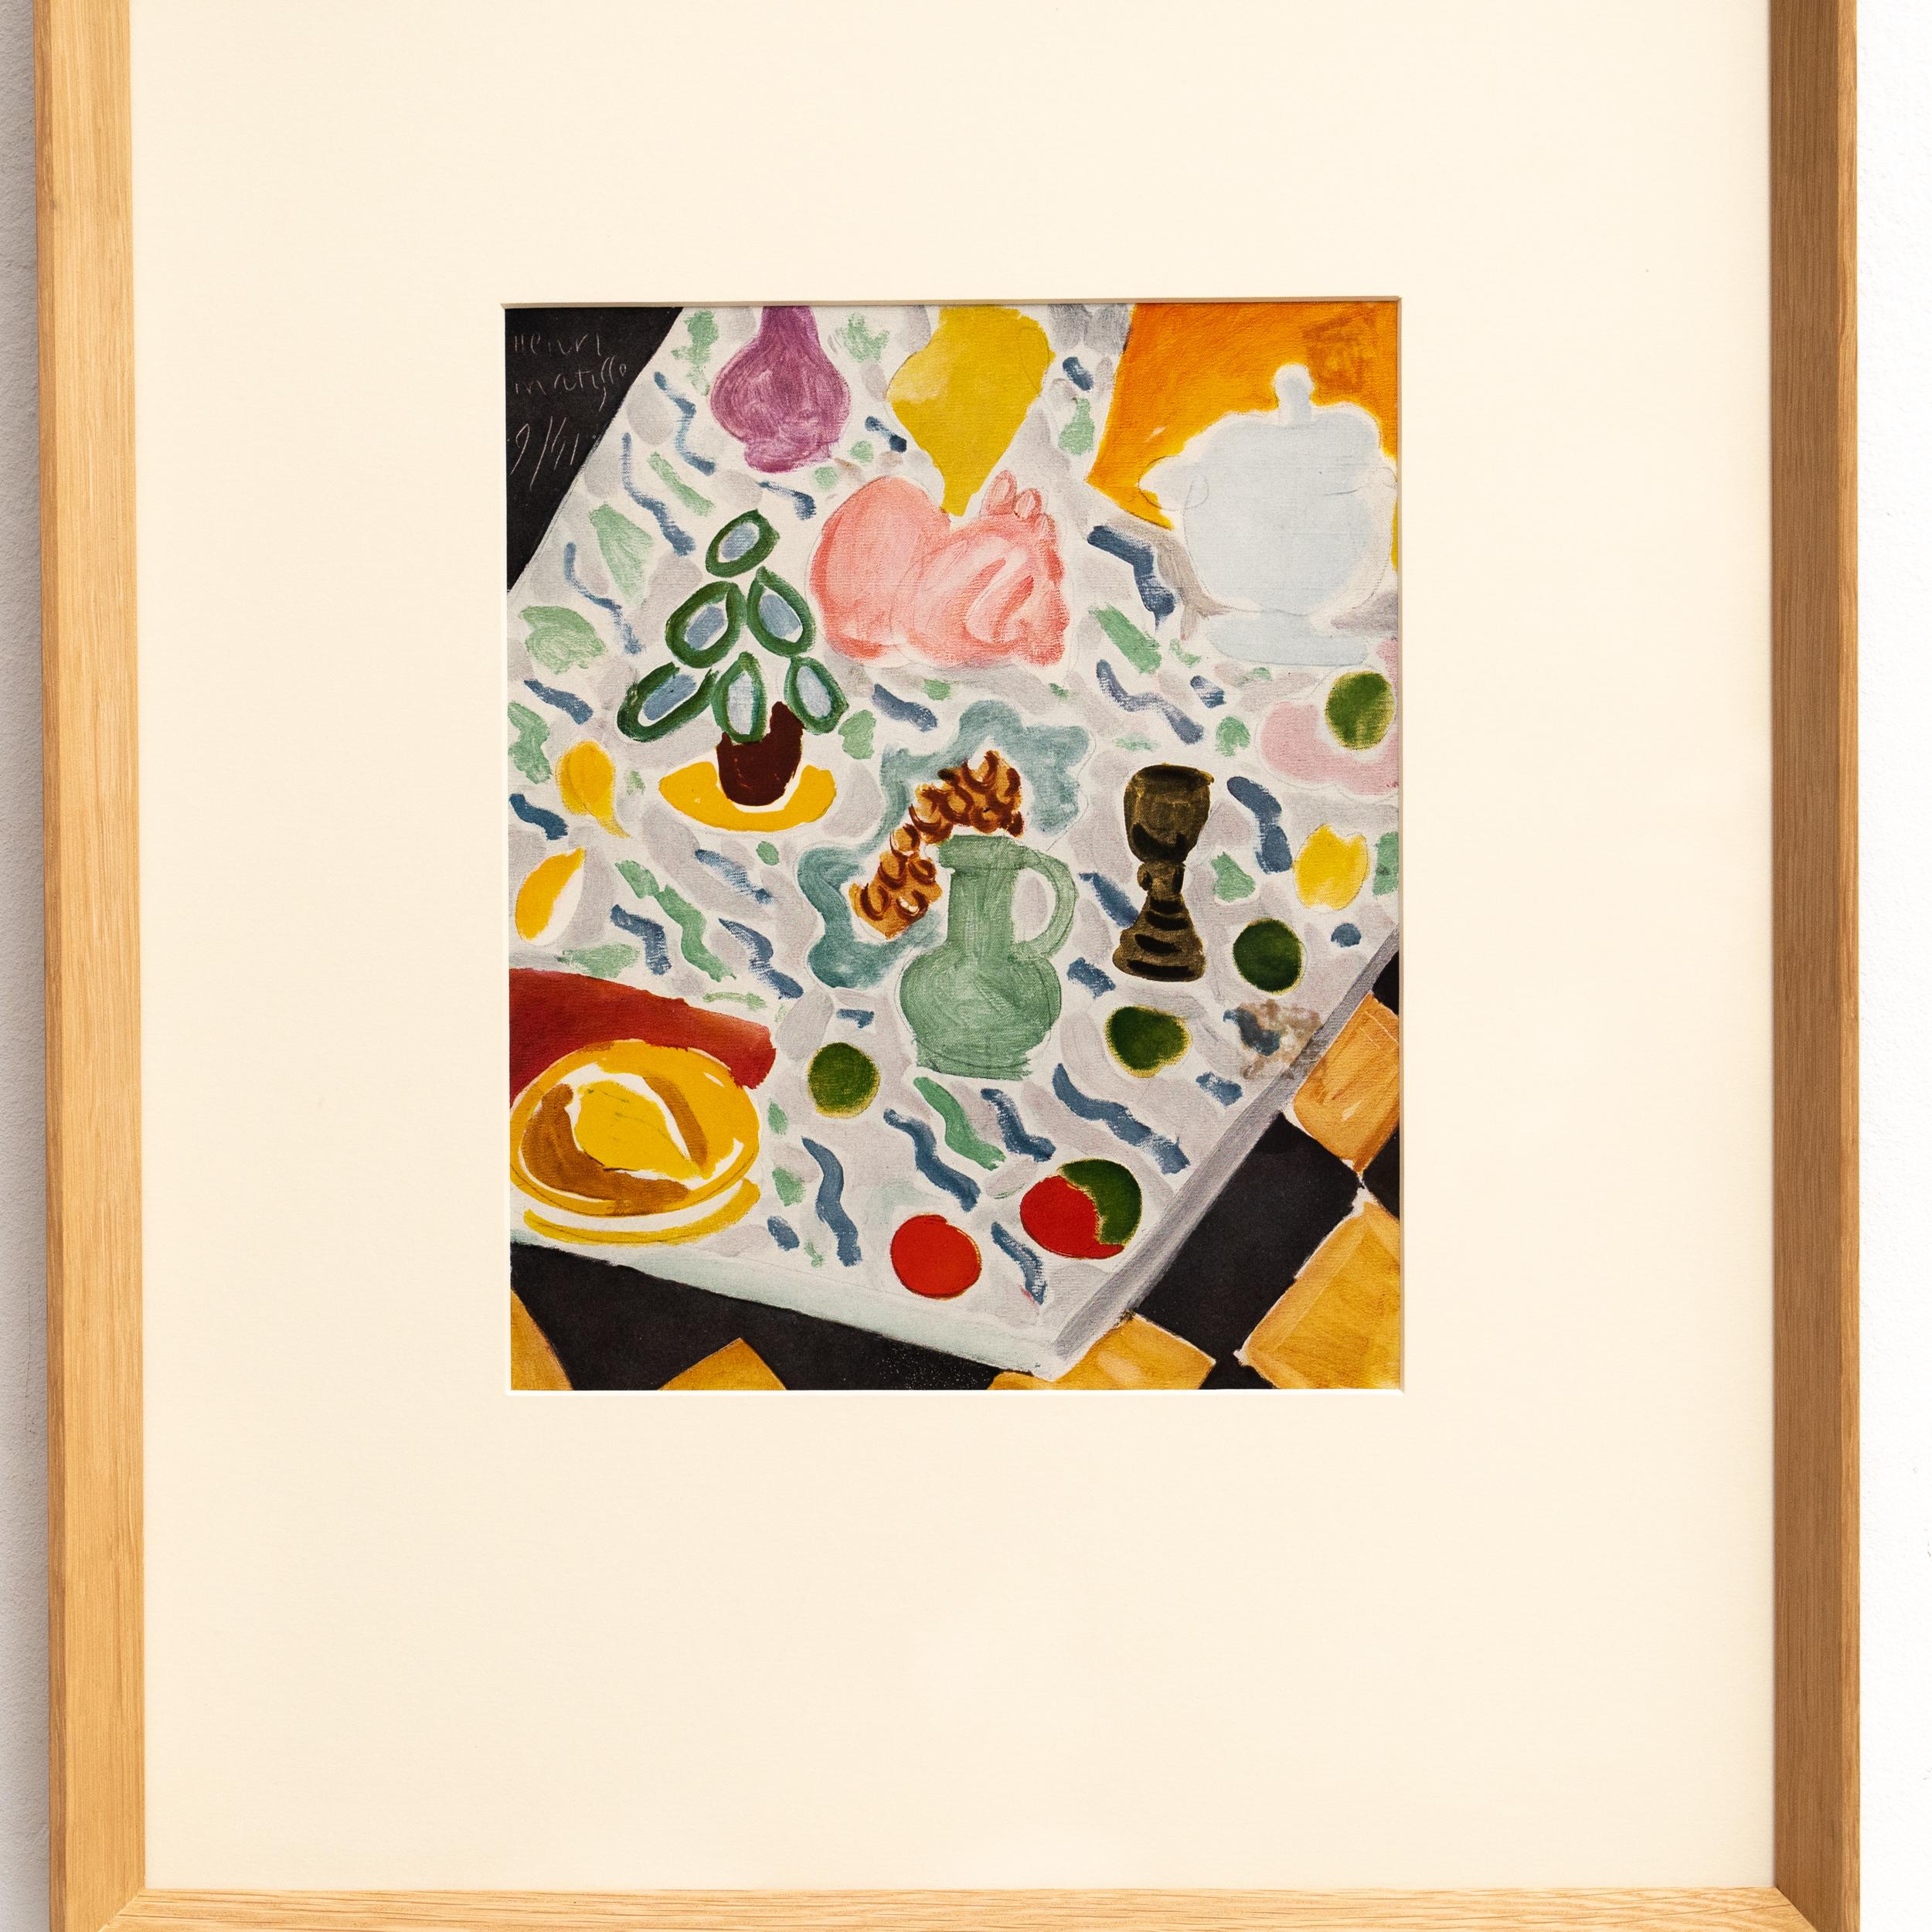 Rare Color Lithograph: A Glimpse into Matisse's Artistic Mastery For Sale 2